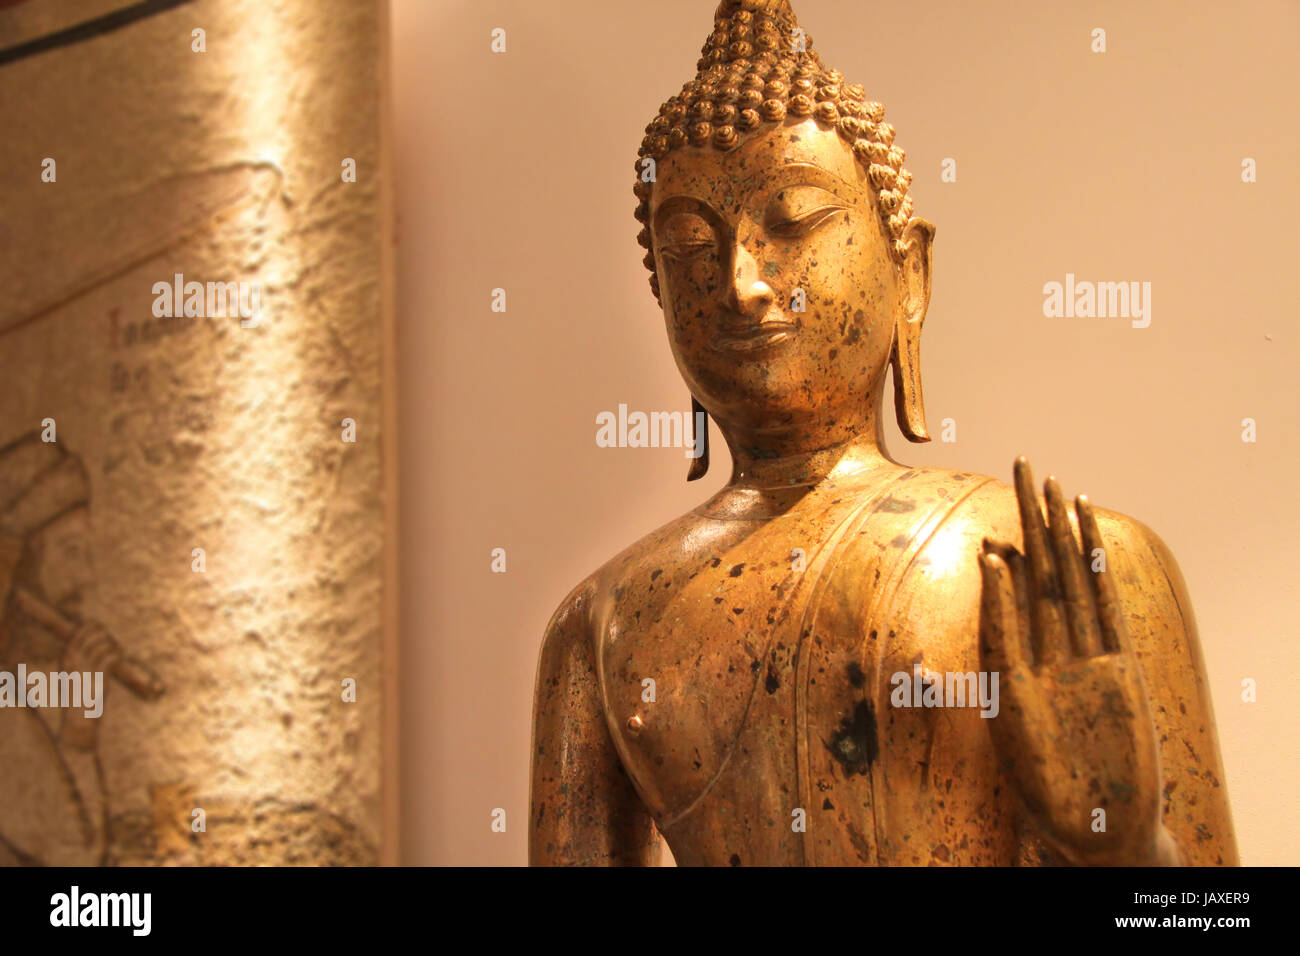 Goldene Buddha Statue stimmungsvoll beleuchtet mit historischem Gemälde Stock Photo